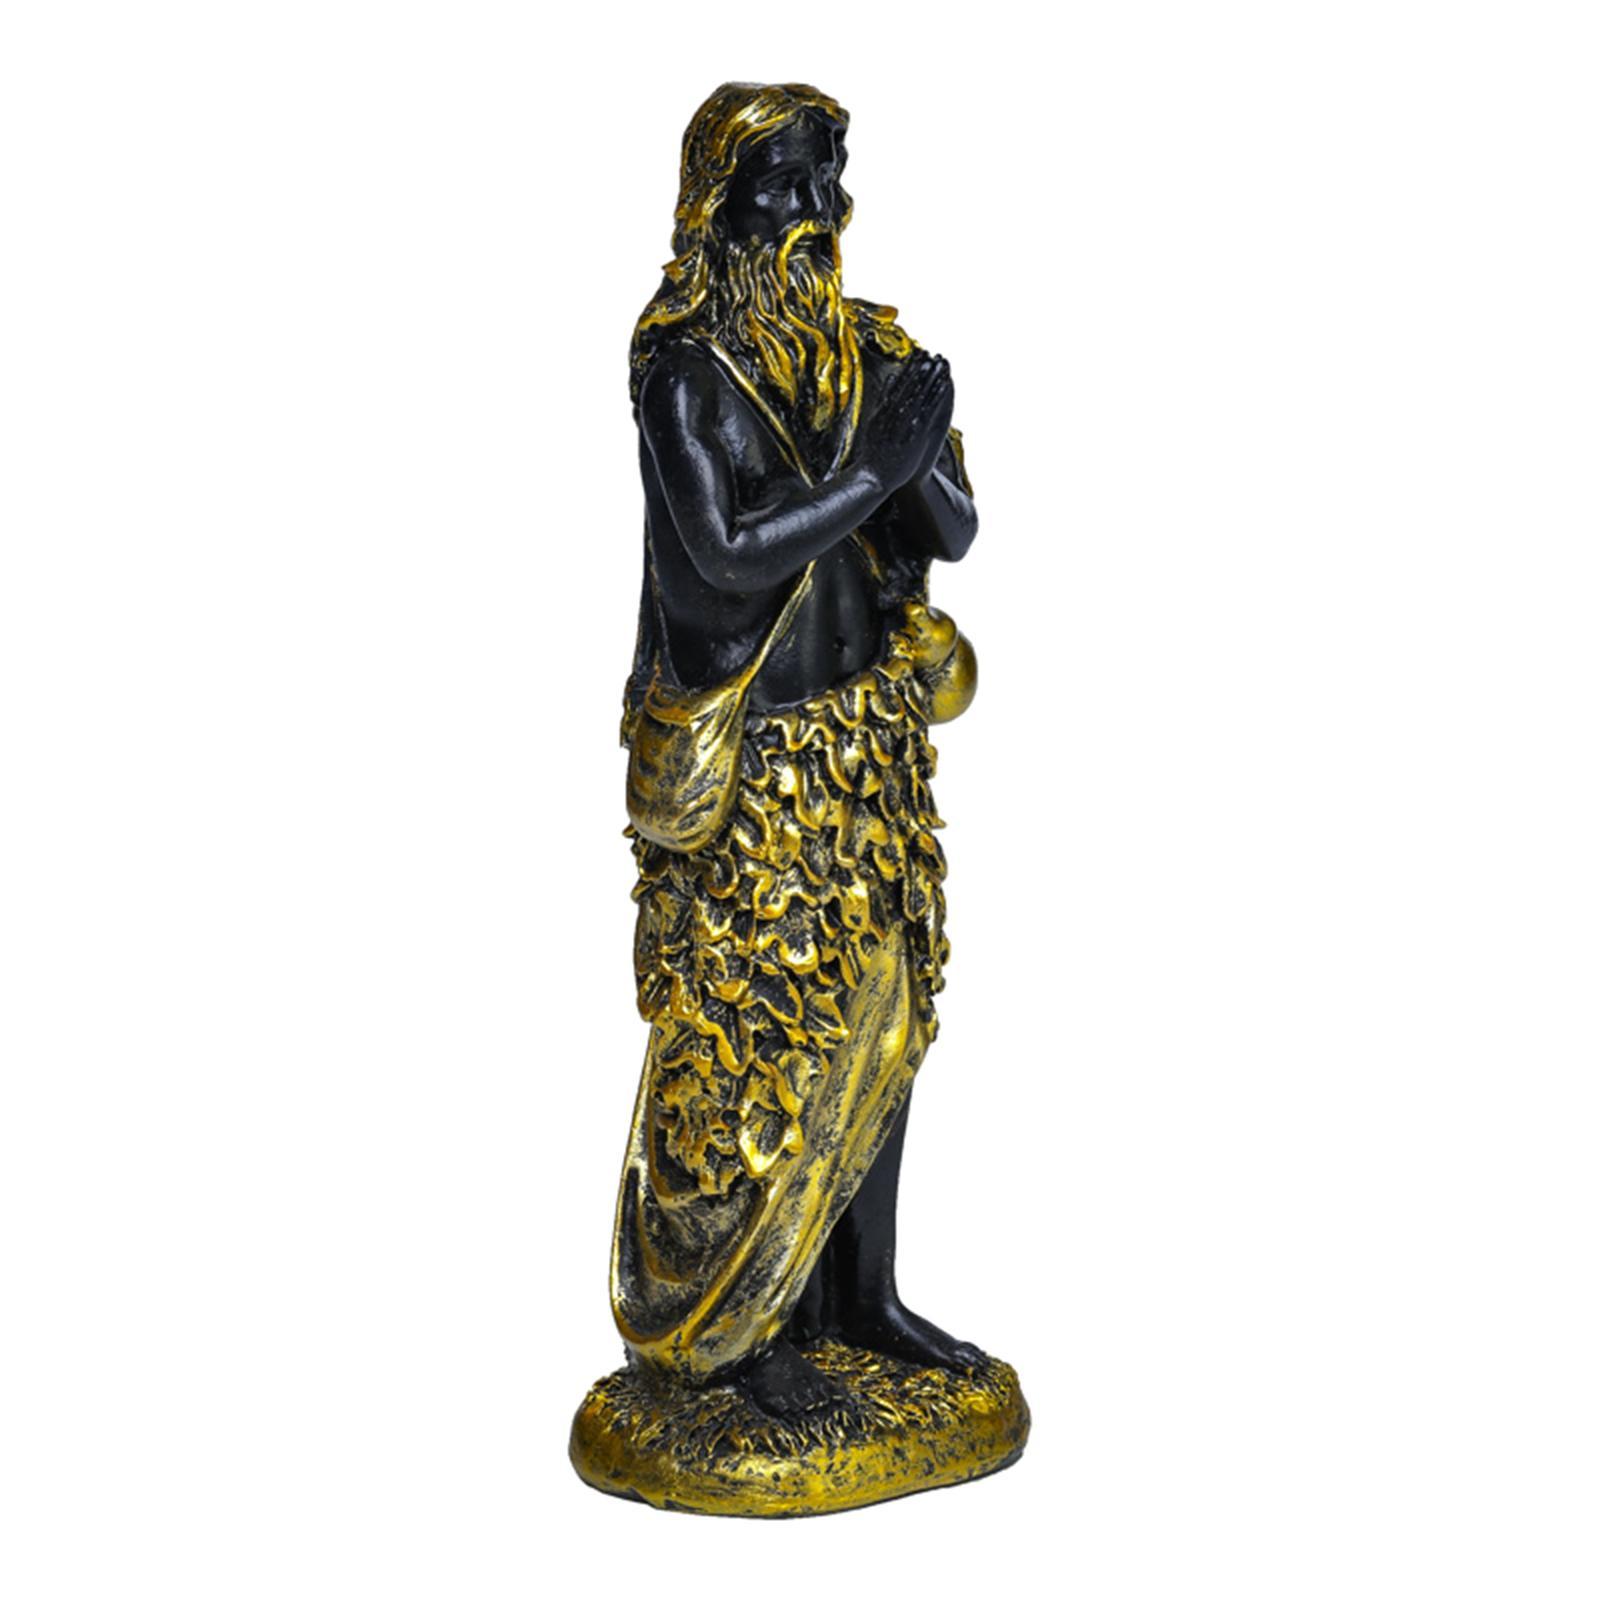 MagiDeal Jesus Series Figurine Statue Religious Decoration Catholic Figurine